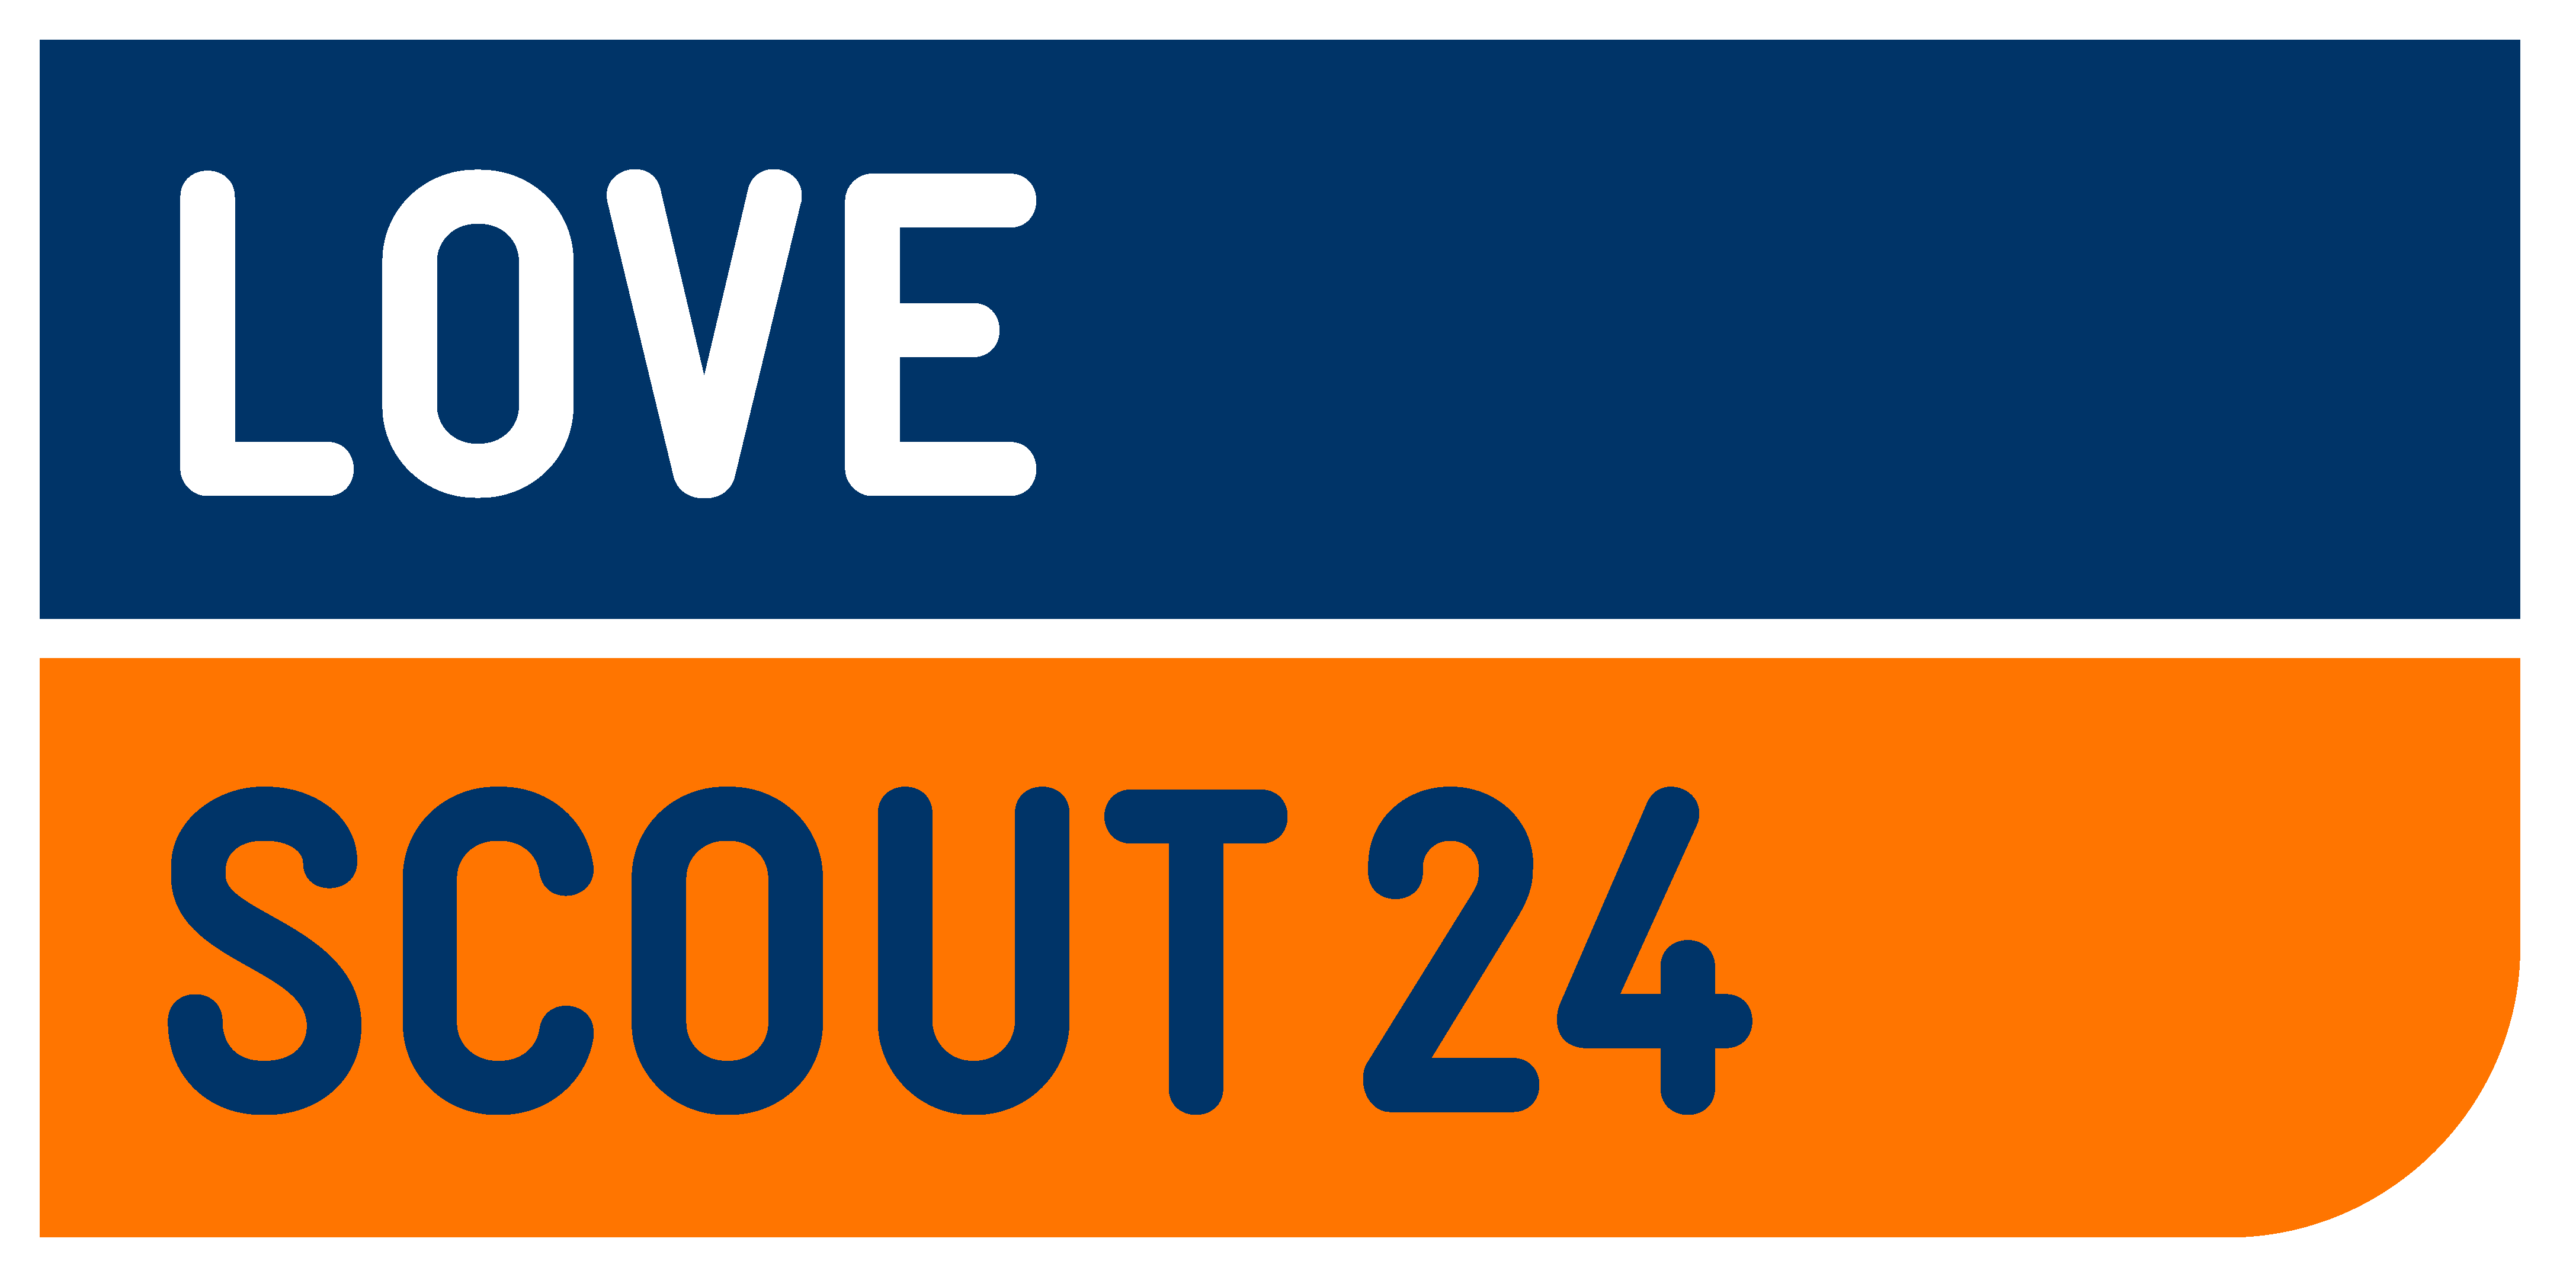 Lovescout24 Logo